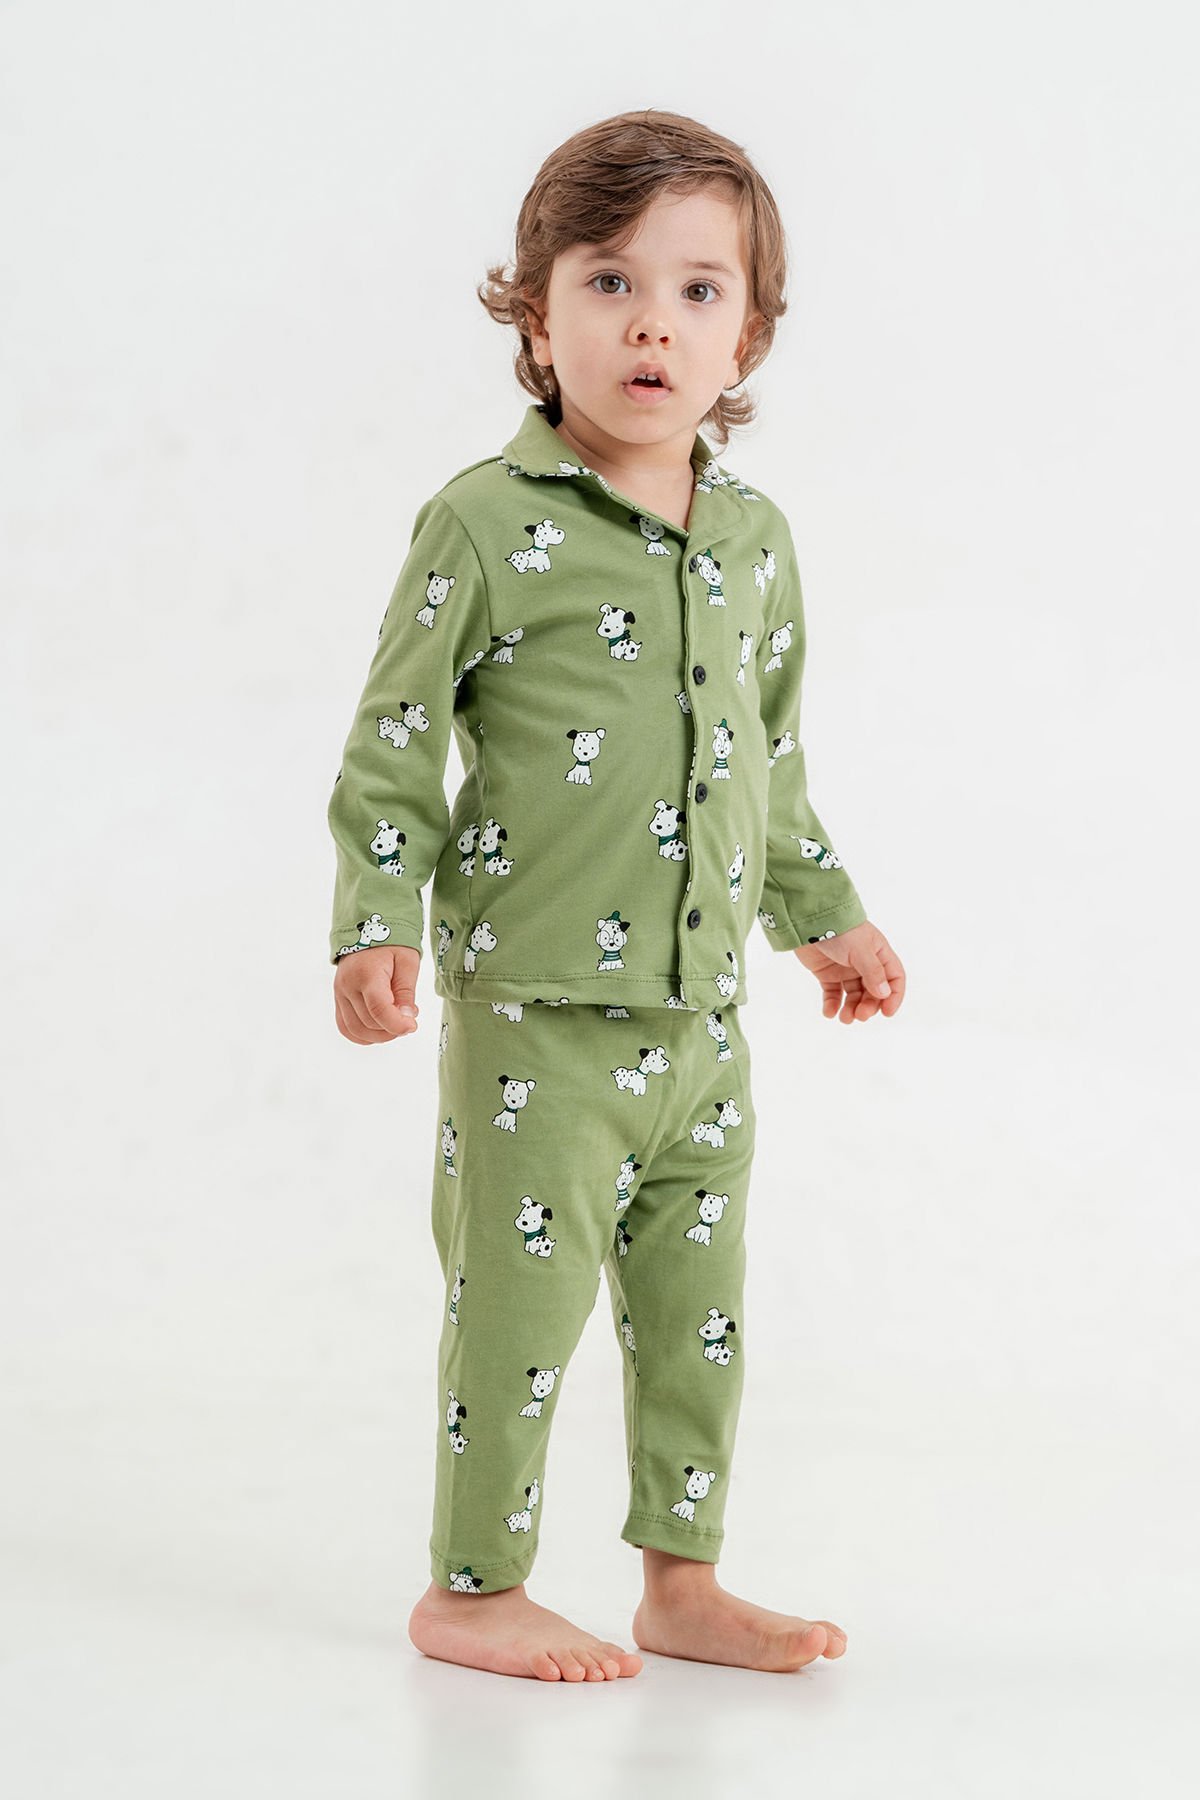 Tuffy Renkli Meyveler Temalı Erkek Bebek İkili Pijama Takımı-1005